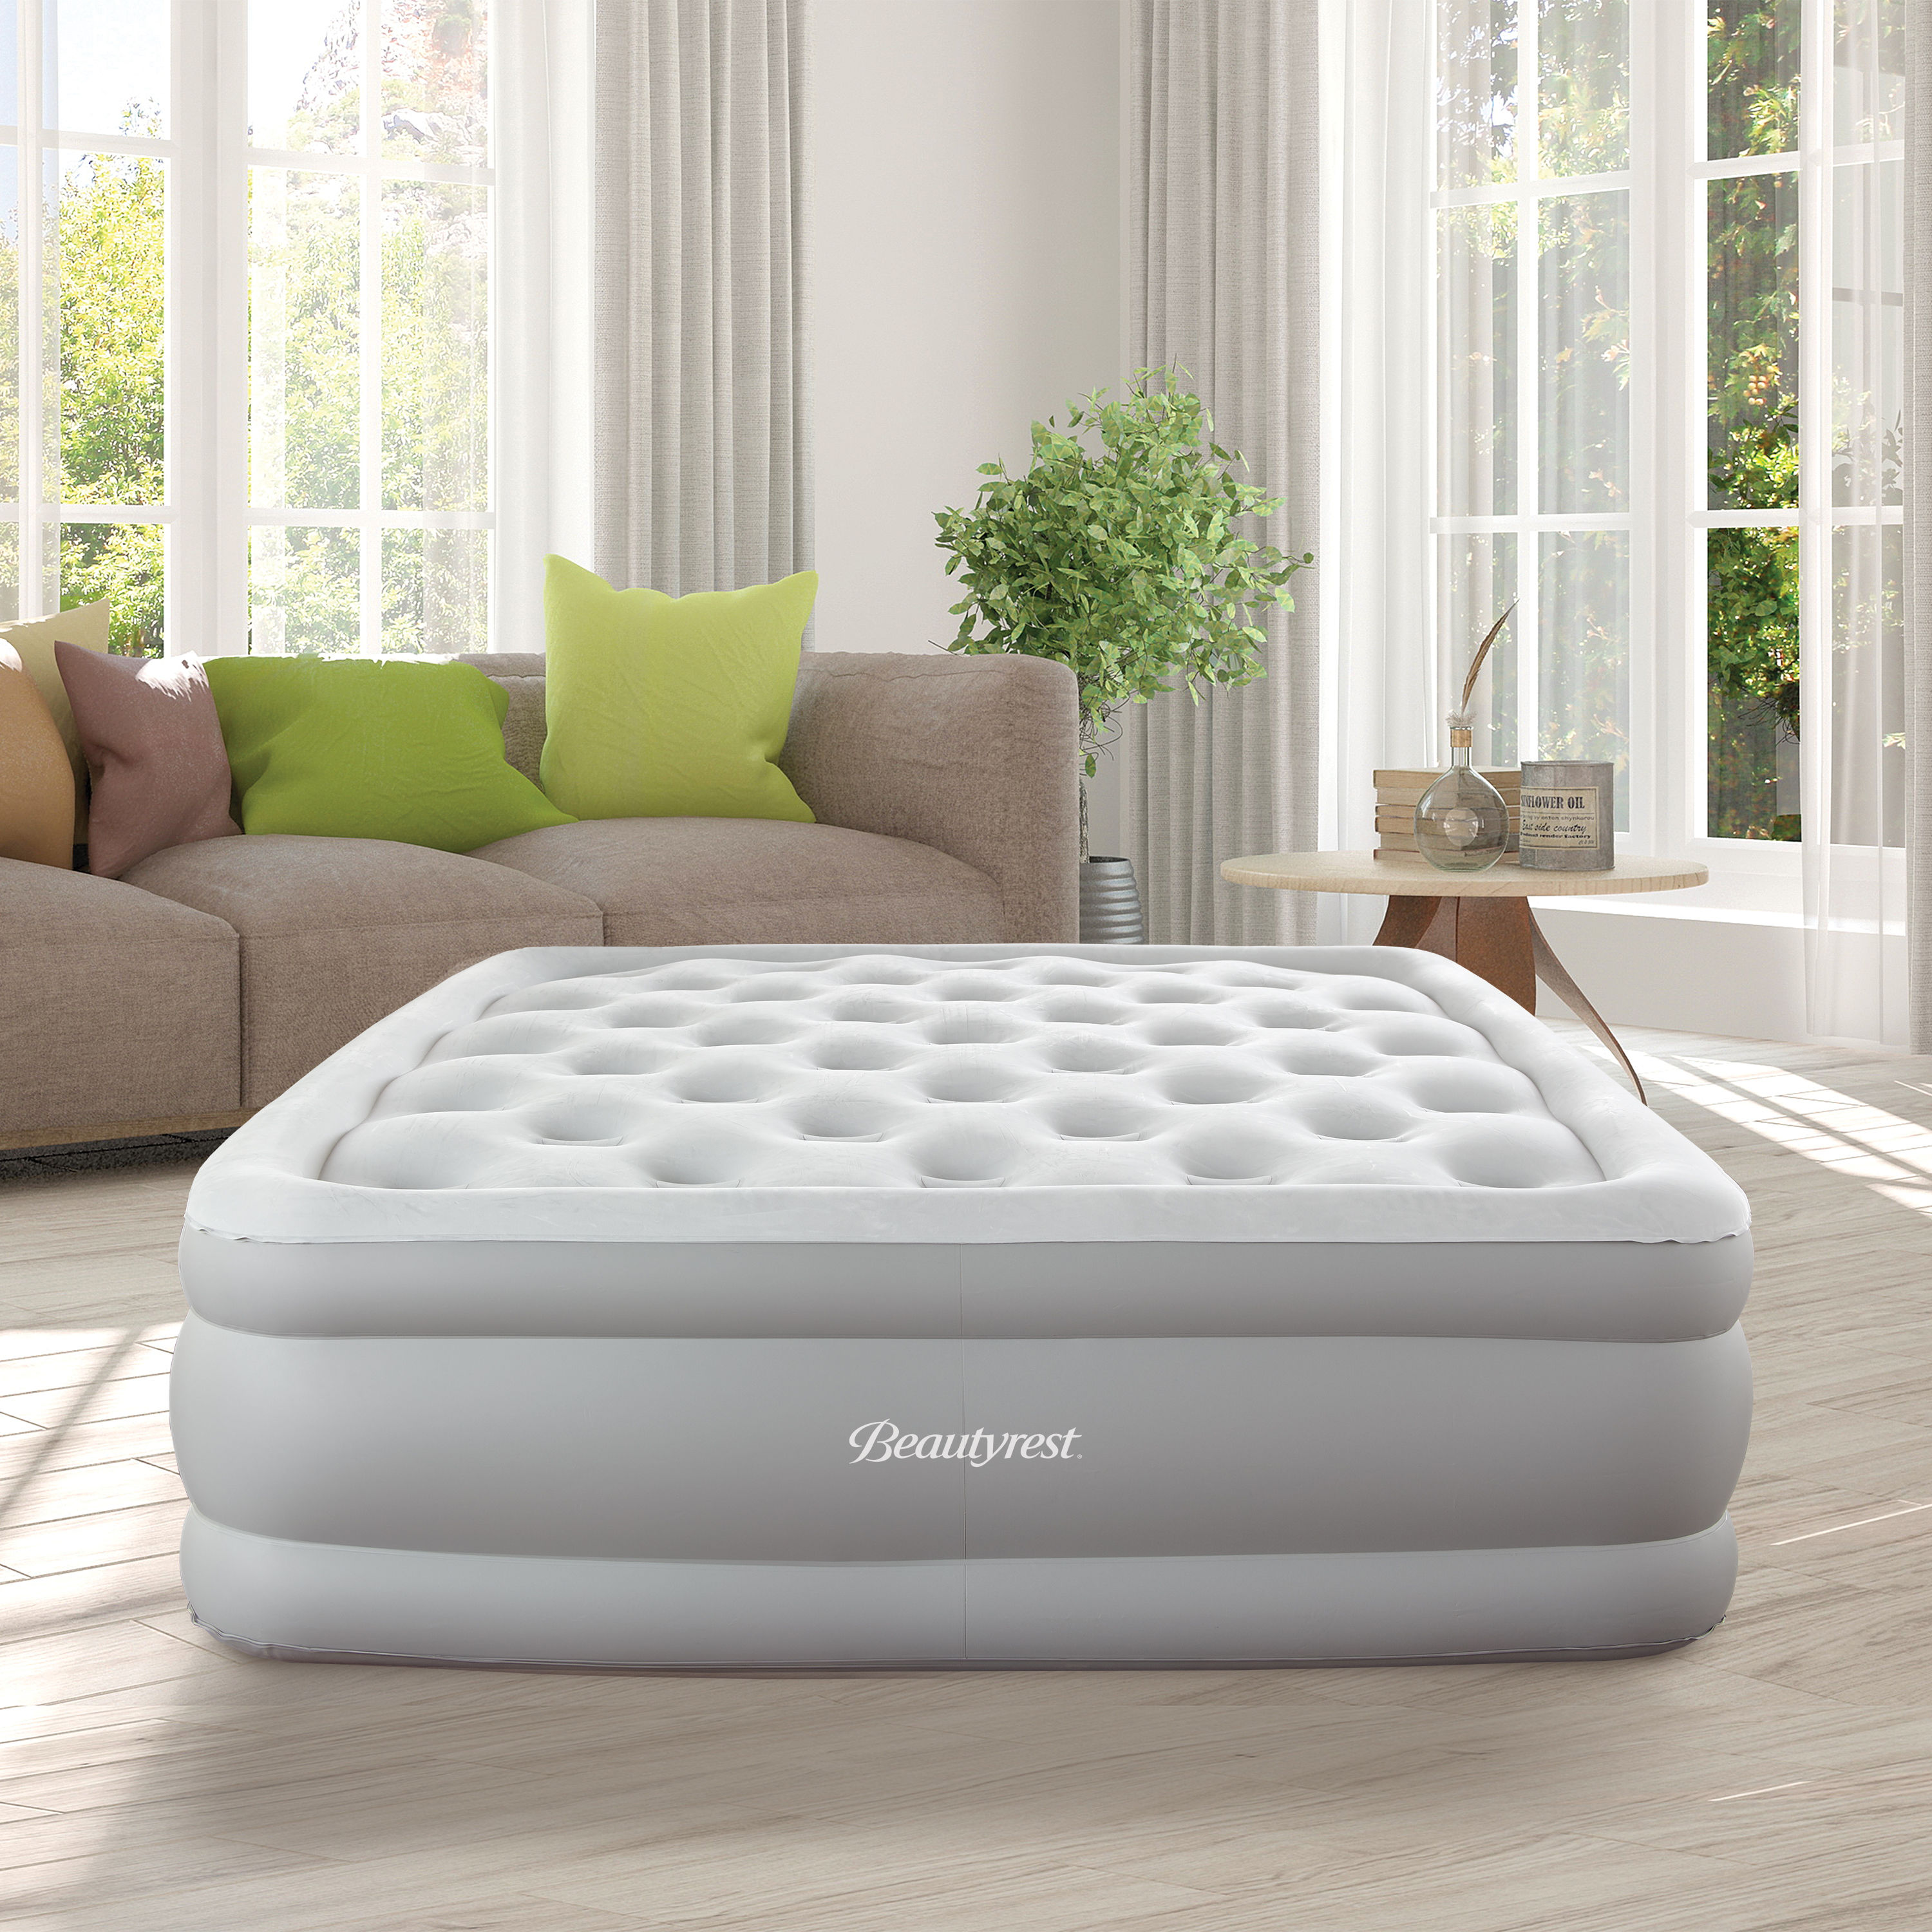 Beautyrest 18 Lumbar Support Air Bed w/ Built-in-pump-Queen 